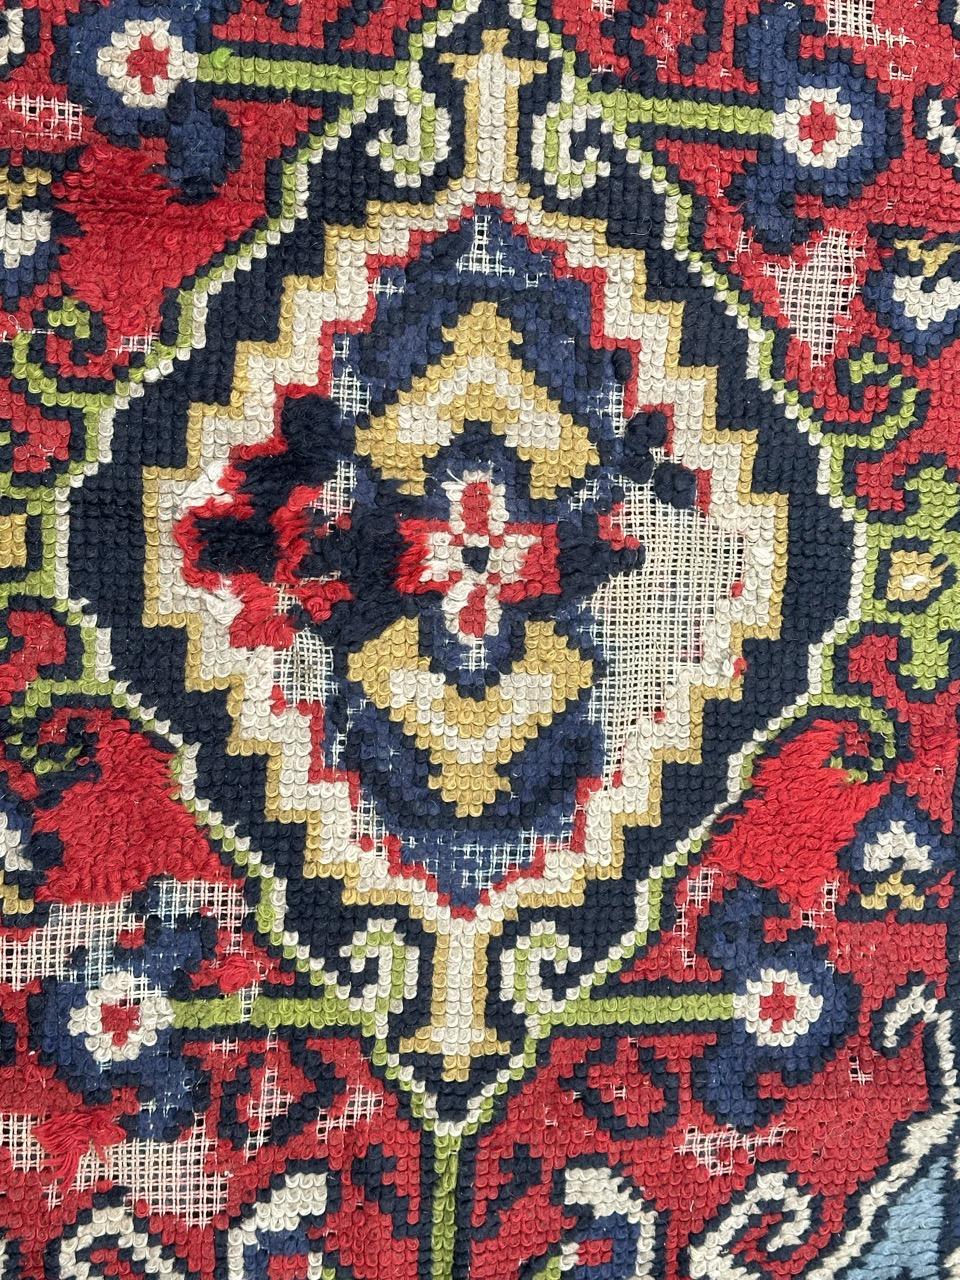 Hübscher kleiner französischer Teppich mit einem Muster aus türkischen Teppichen und schönen Farben mit Rot, Himmelblau, Dunkelblau, Grün und Gelb, komplett handgeknüpft mit Wolle auf Baumwollgrund. 
Viele im Wollstapel verloren und können repariert